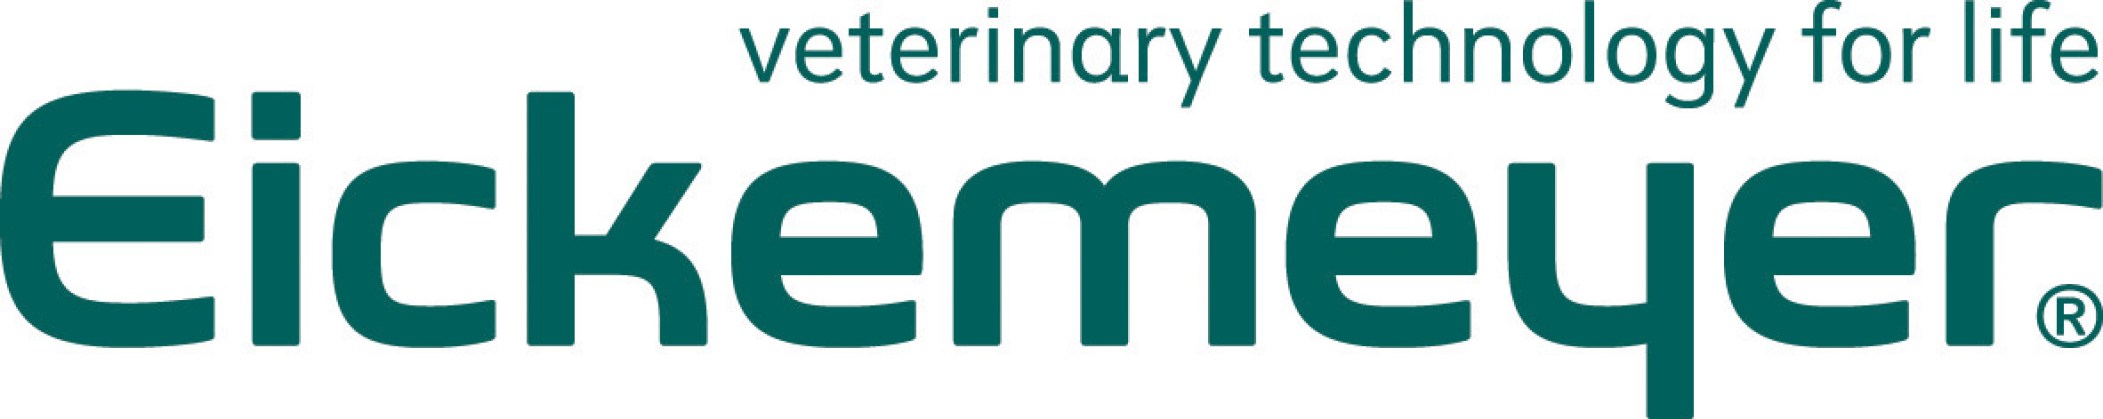 Eickemeyer-Logo38